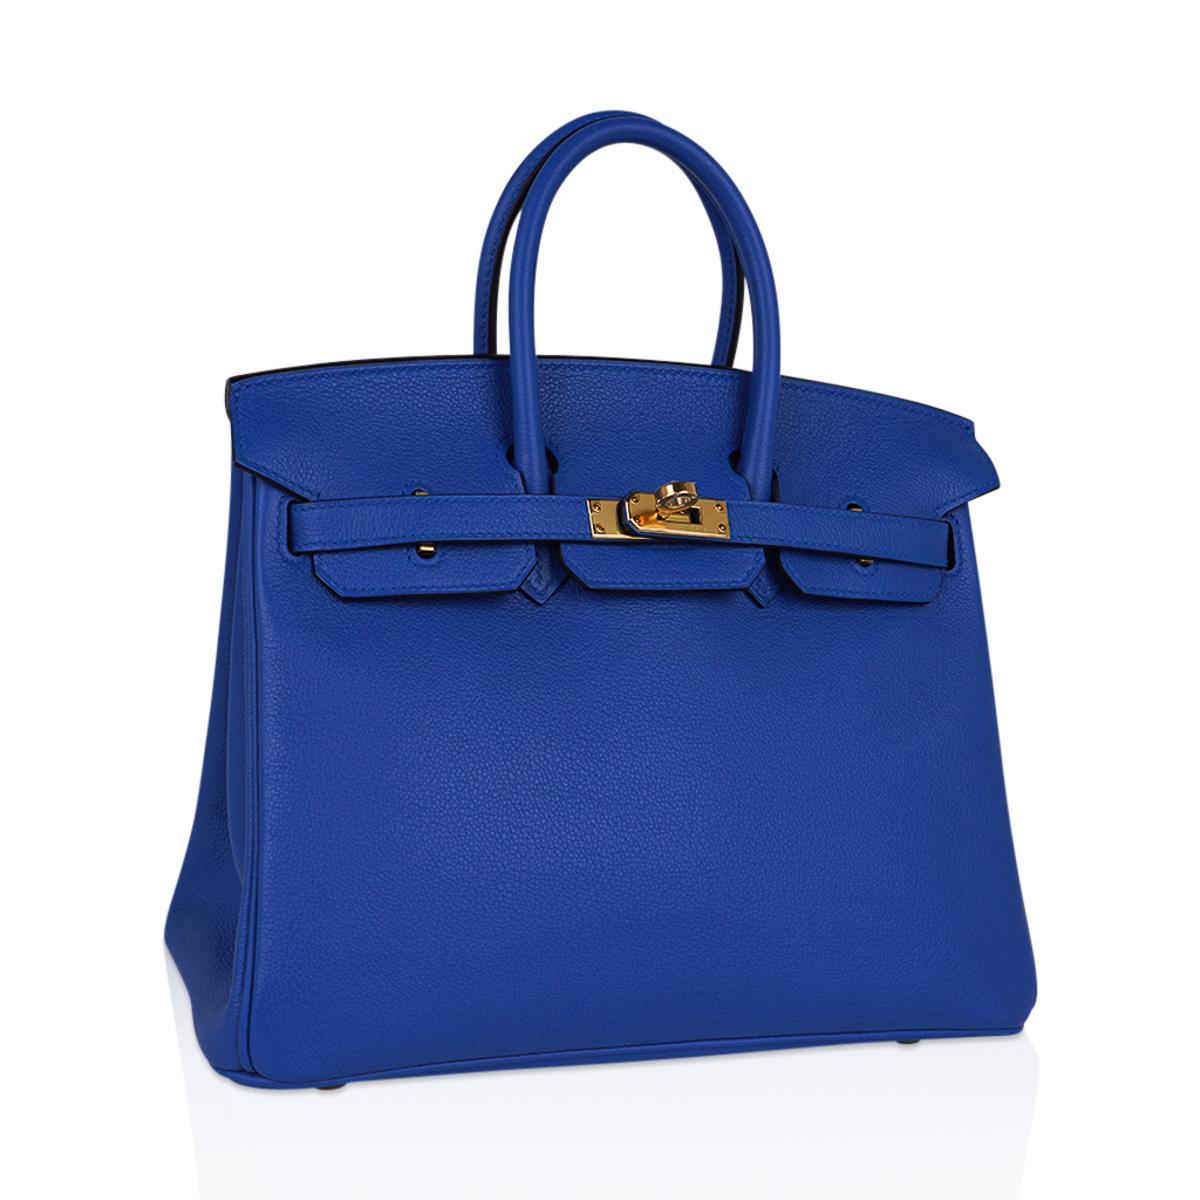 Mightychic bietet eine Hermes Birkin 25 Tasche in atemberaubendem Blue Zellige an. 
Reich gesättigtes Bleu Zellige hat eine schöne Farbtiefe in Novillo-Leder. 
Üppig mit goldener Hardware.
Kommt mit Schloss, Schlüssel, Clochette, Schläfer,